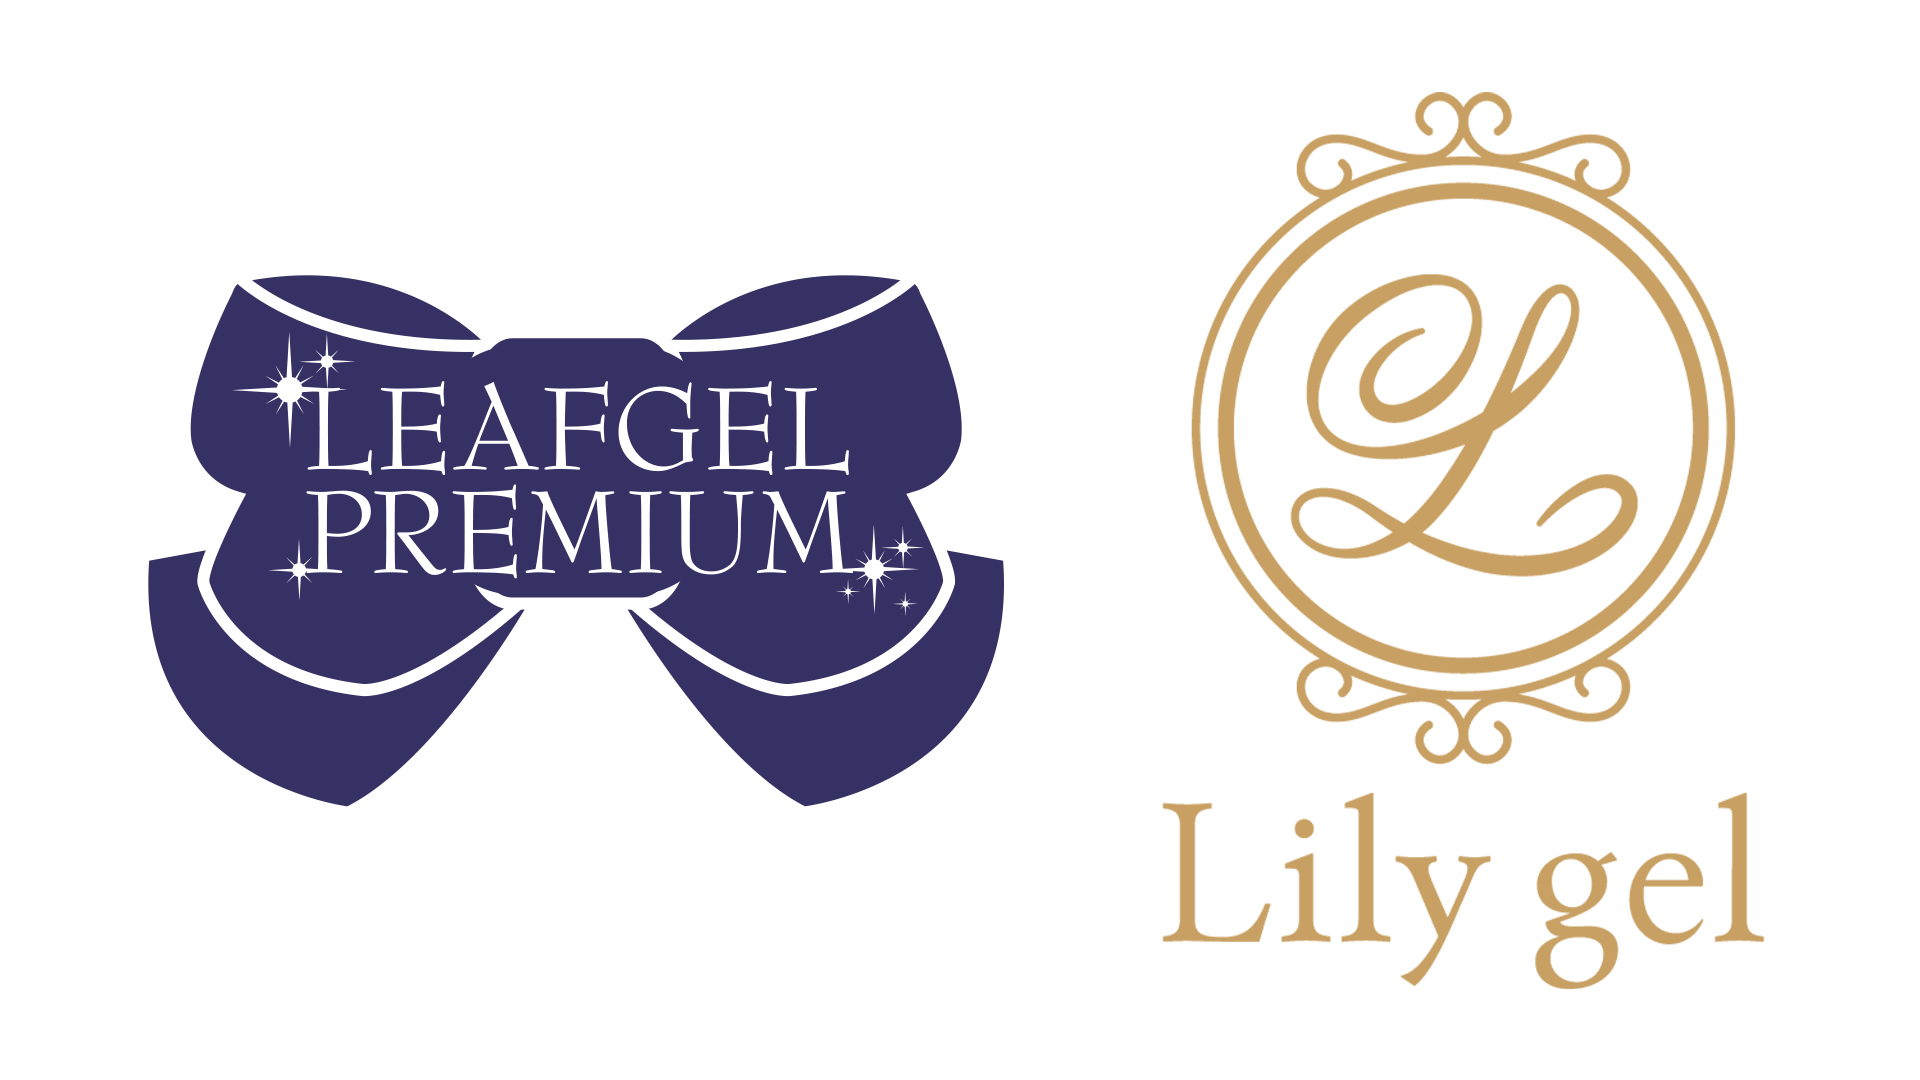 LEAFGEL PREMIUM/Lily gel